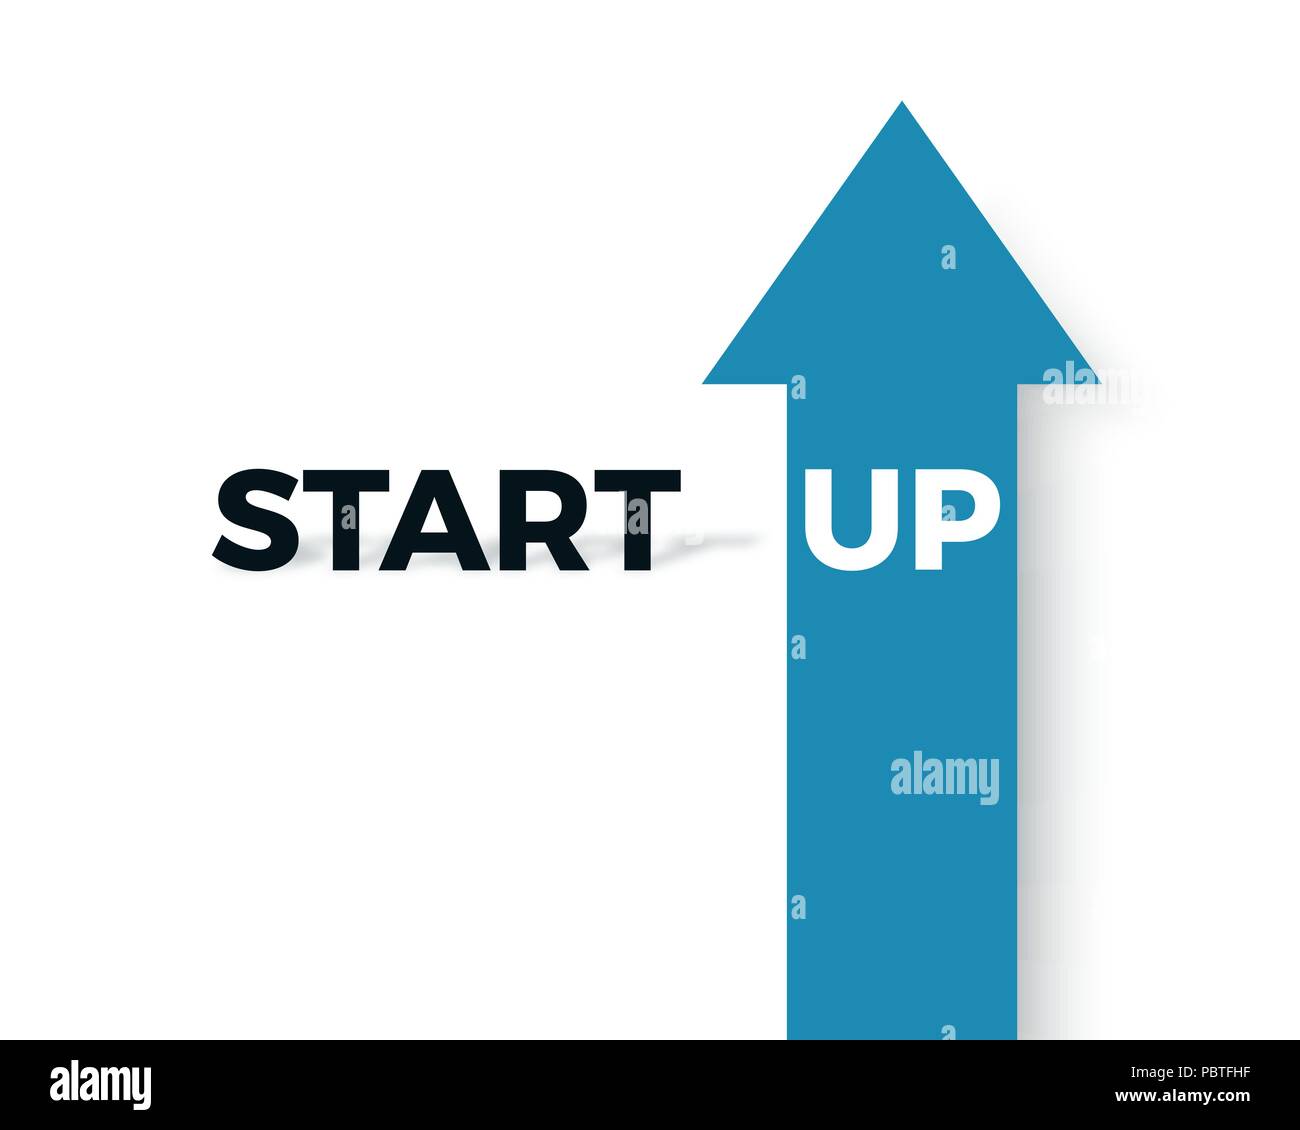 Start Business Konzept. Text mit Schatten und Text bis auf den blauen Pfeil. Vector Illustration Stock Vektor